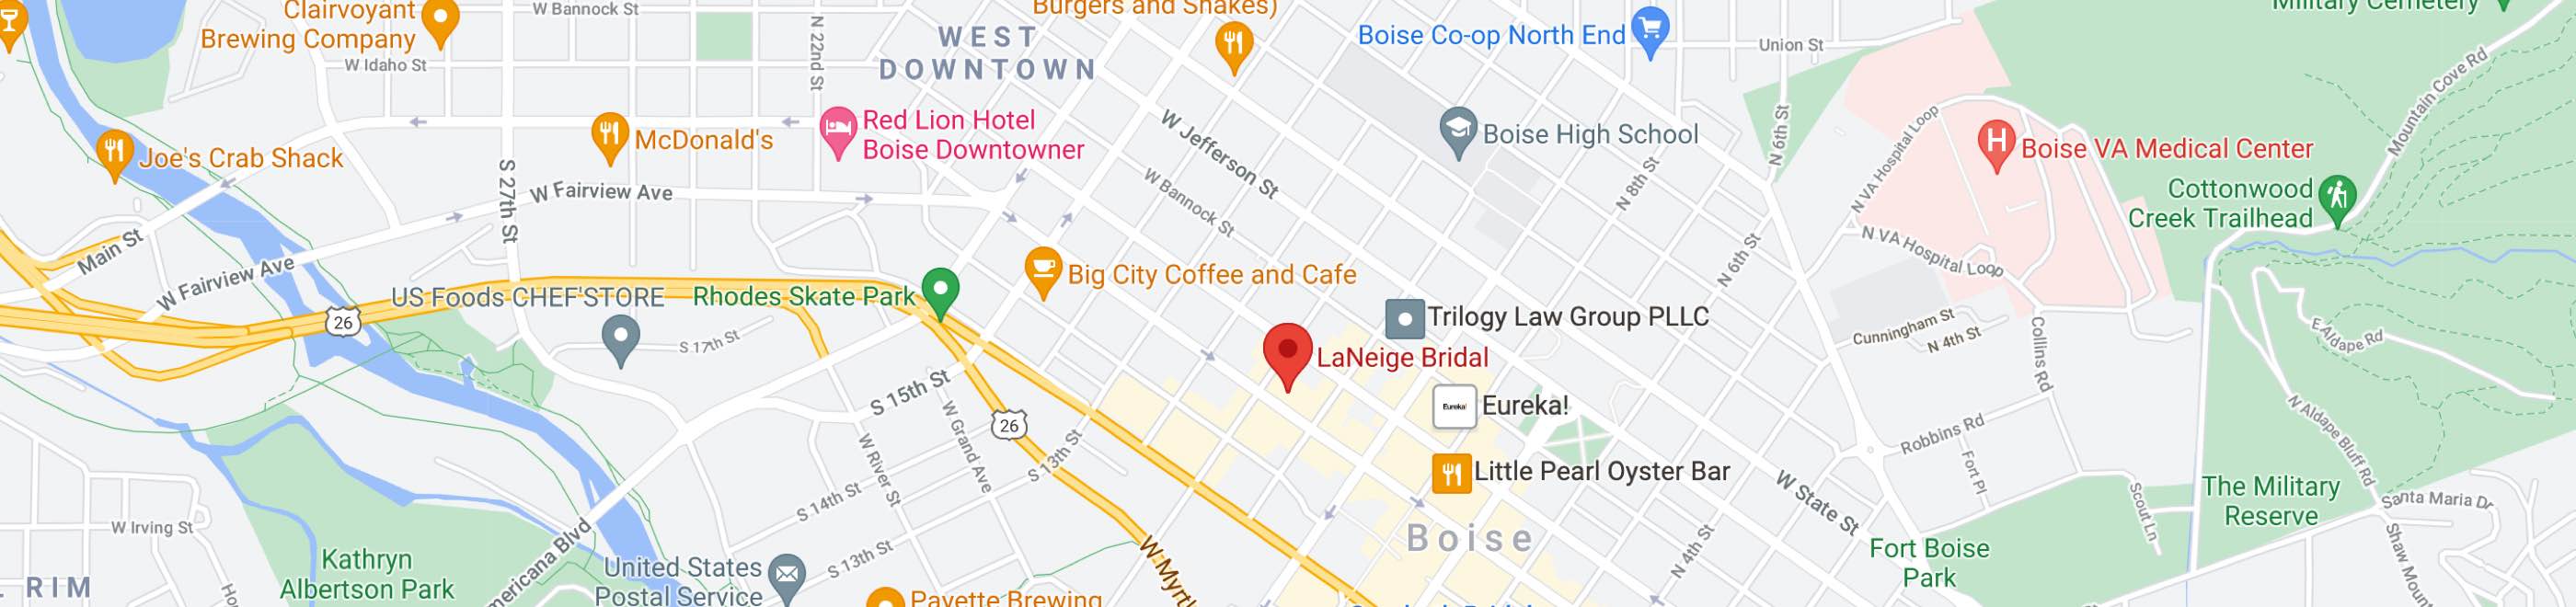 LaNeige Bridal map. Desktop image.